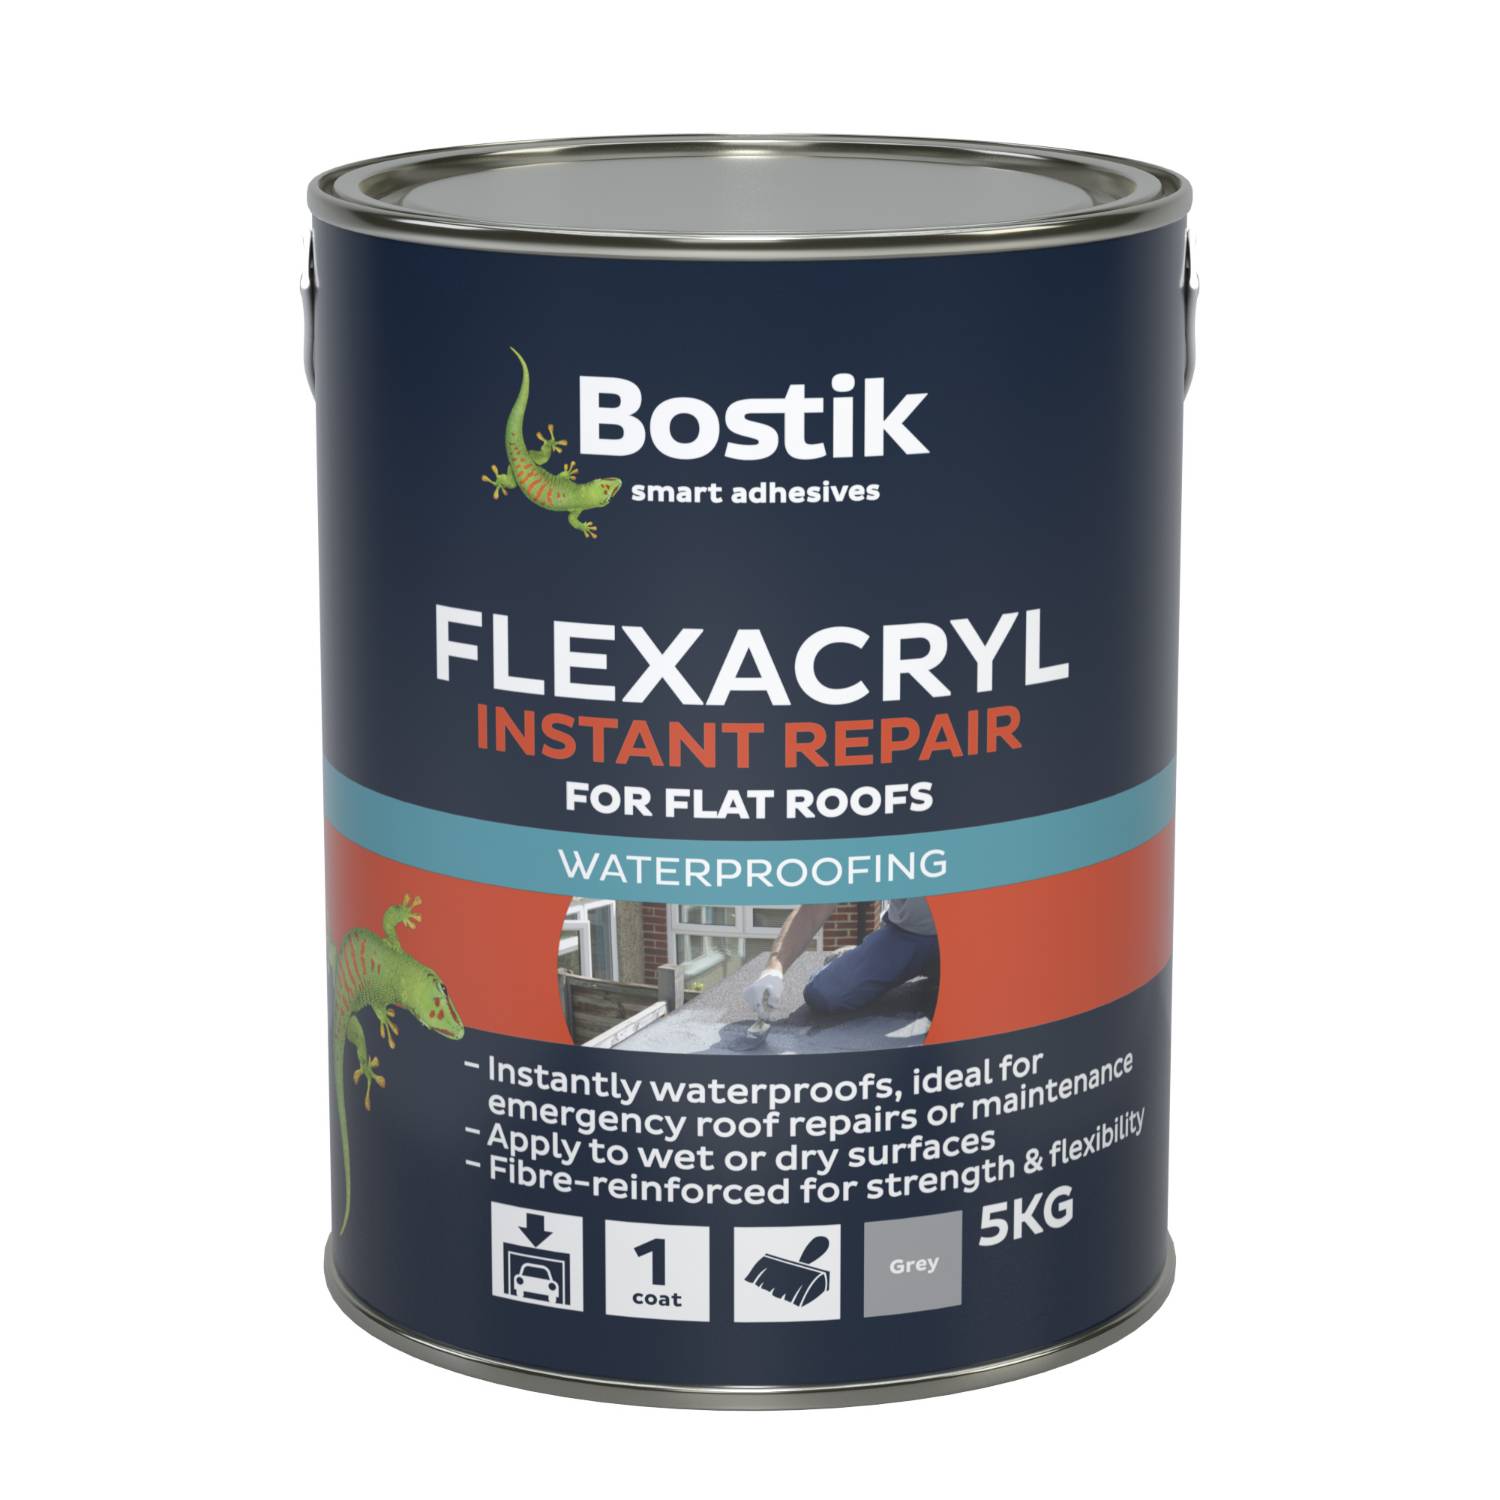 Bostik Flexacryl Instant Repair for Flat Roofs. - Roof waterproofing